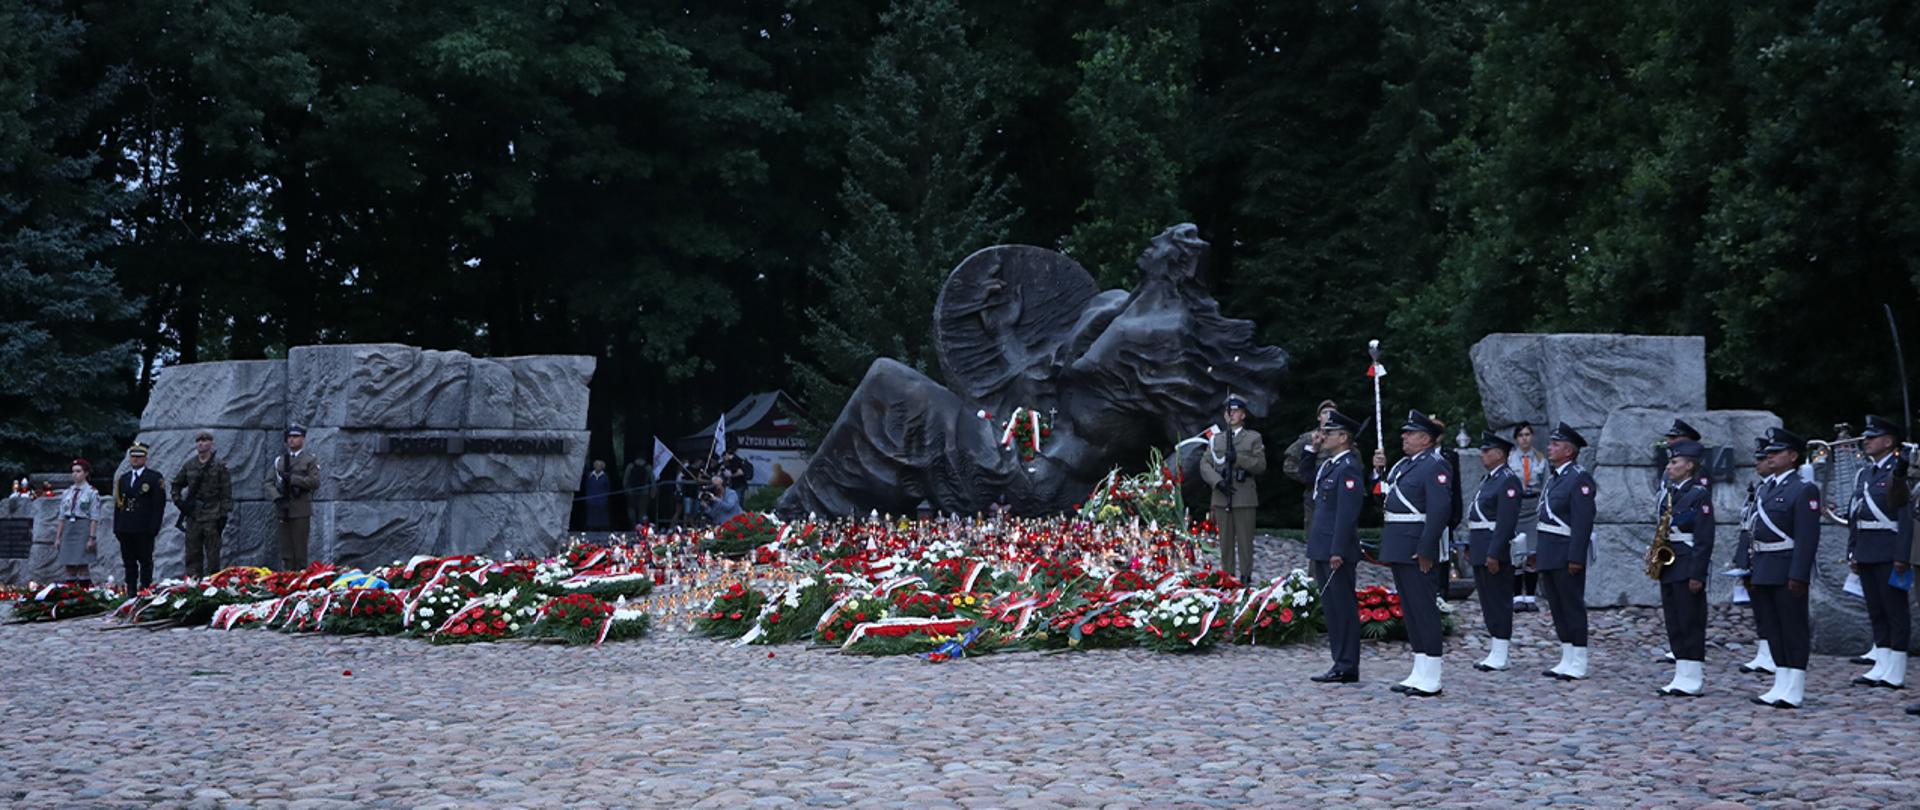 Widok na Pomnik "Polegli - Niepokonani" z zapalonymi zniczami i złożonymi kwiatami.